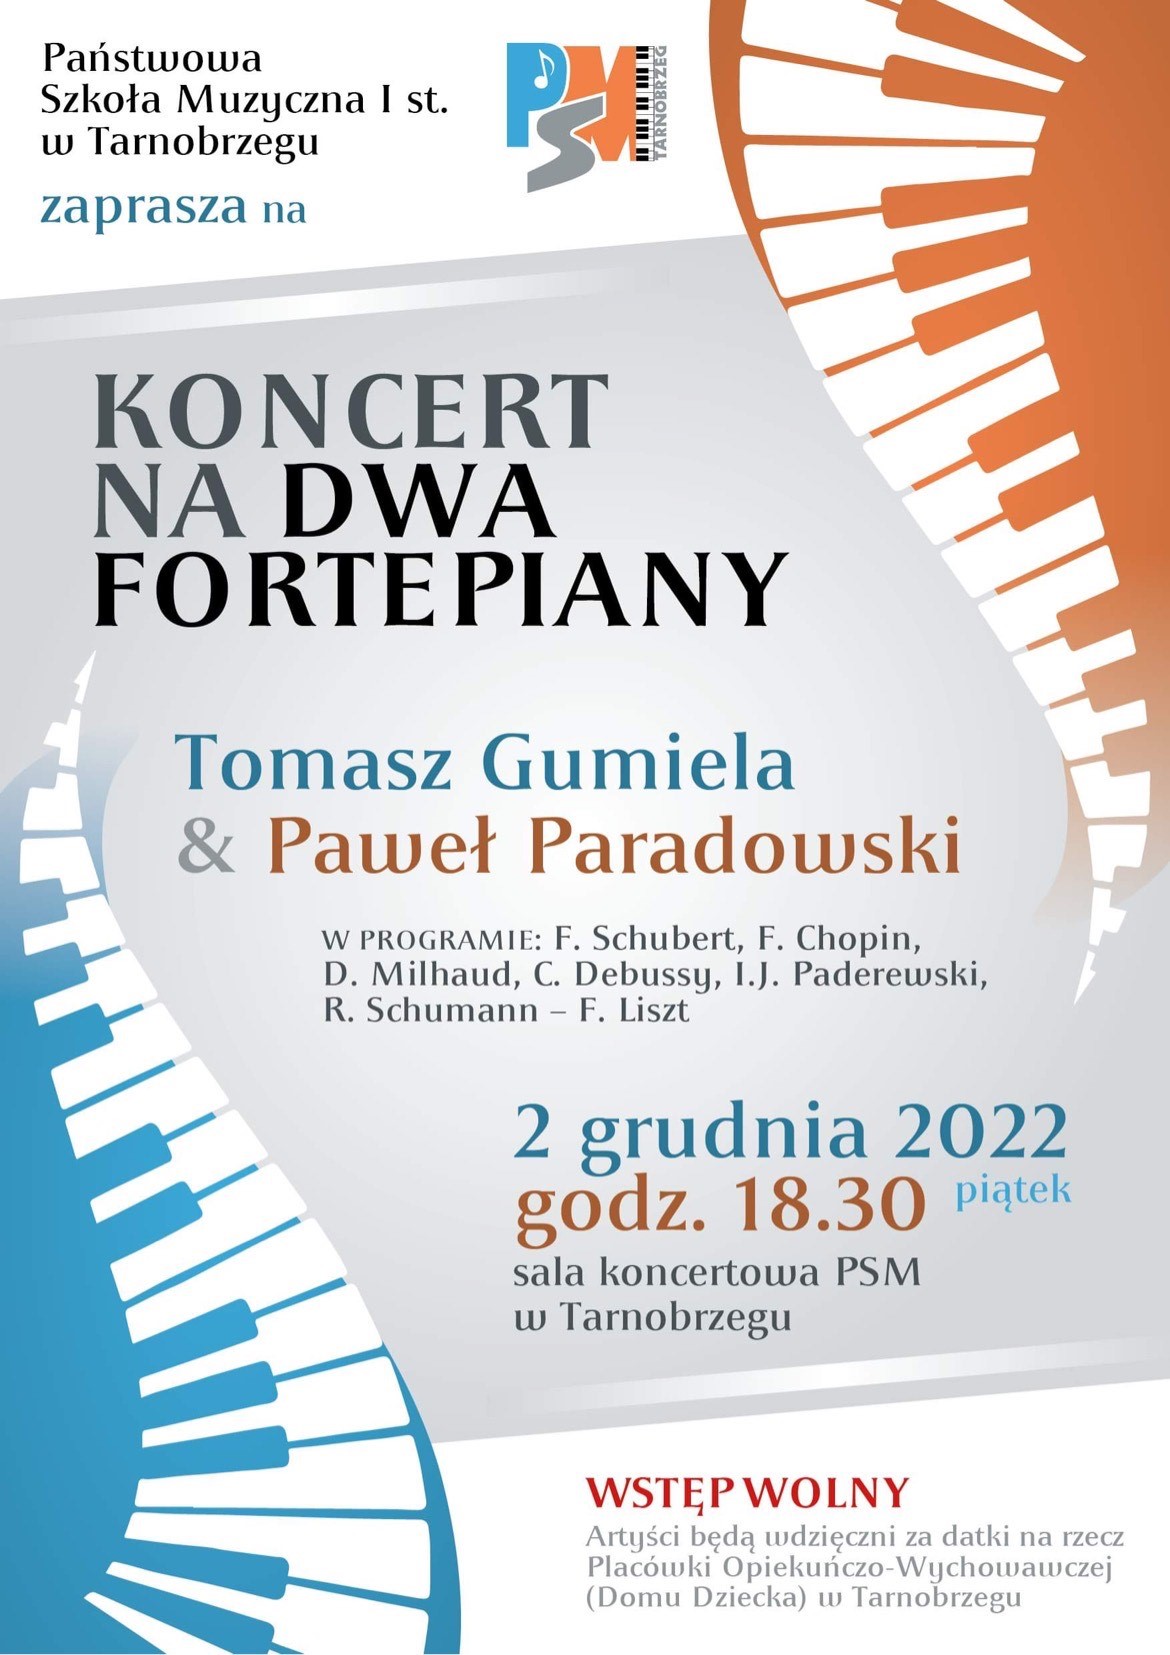 Plakat koncertu na dwa fortepiany Tomasza Gumieli i Pawła Paradowskiego. W programie: F. Schubert, F. Chopin, D. Milhaud, C. Debussy, I.J. Paderewski, R. Schumann- F. Liszt